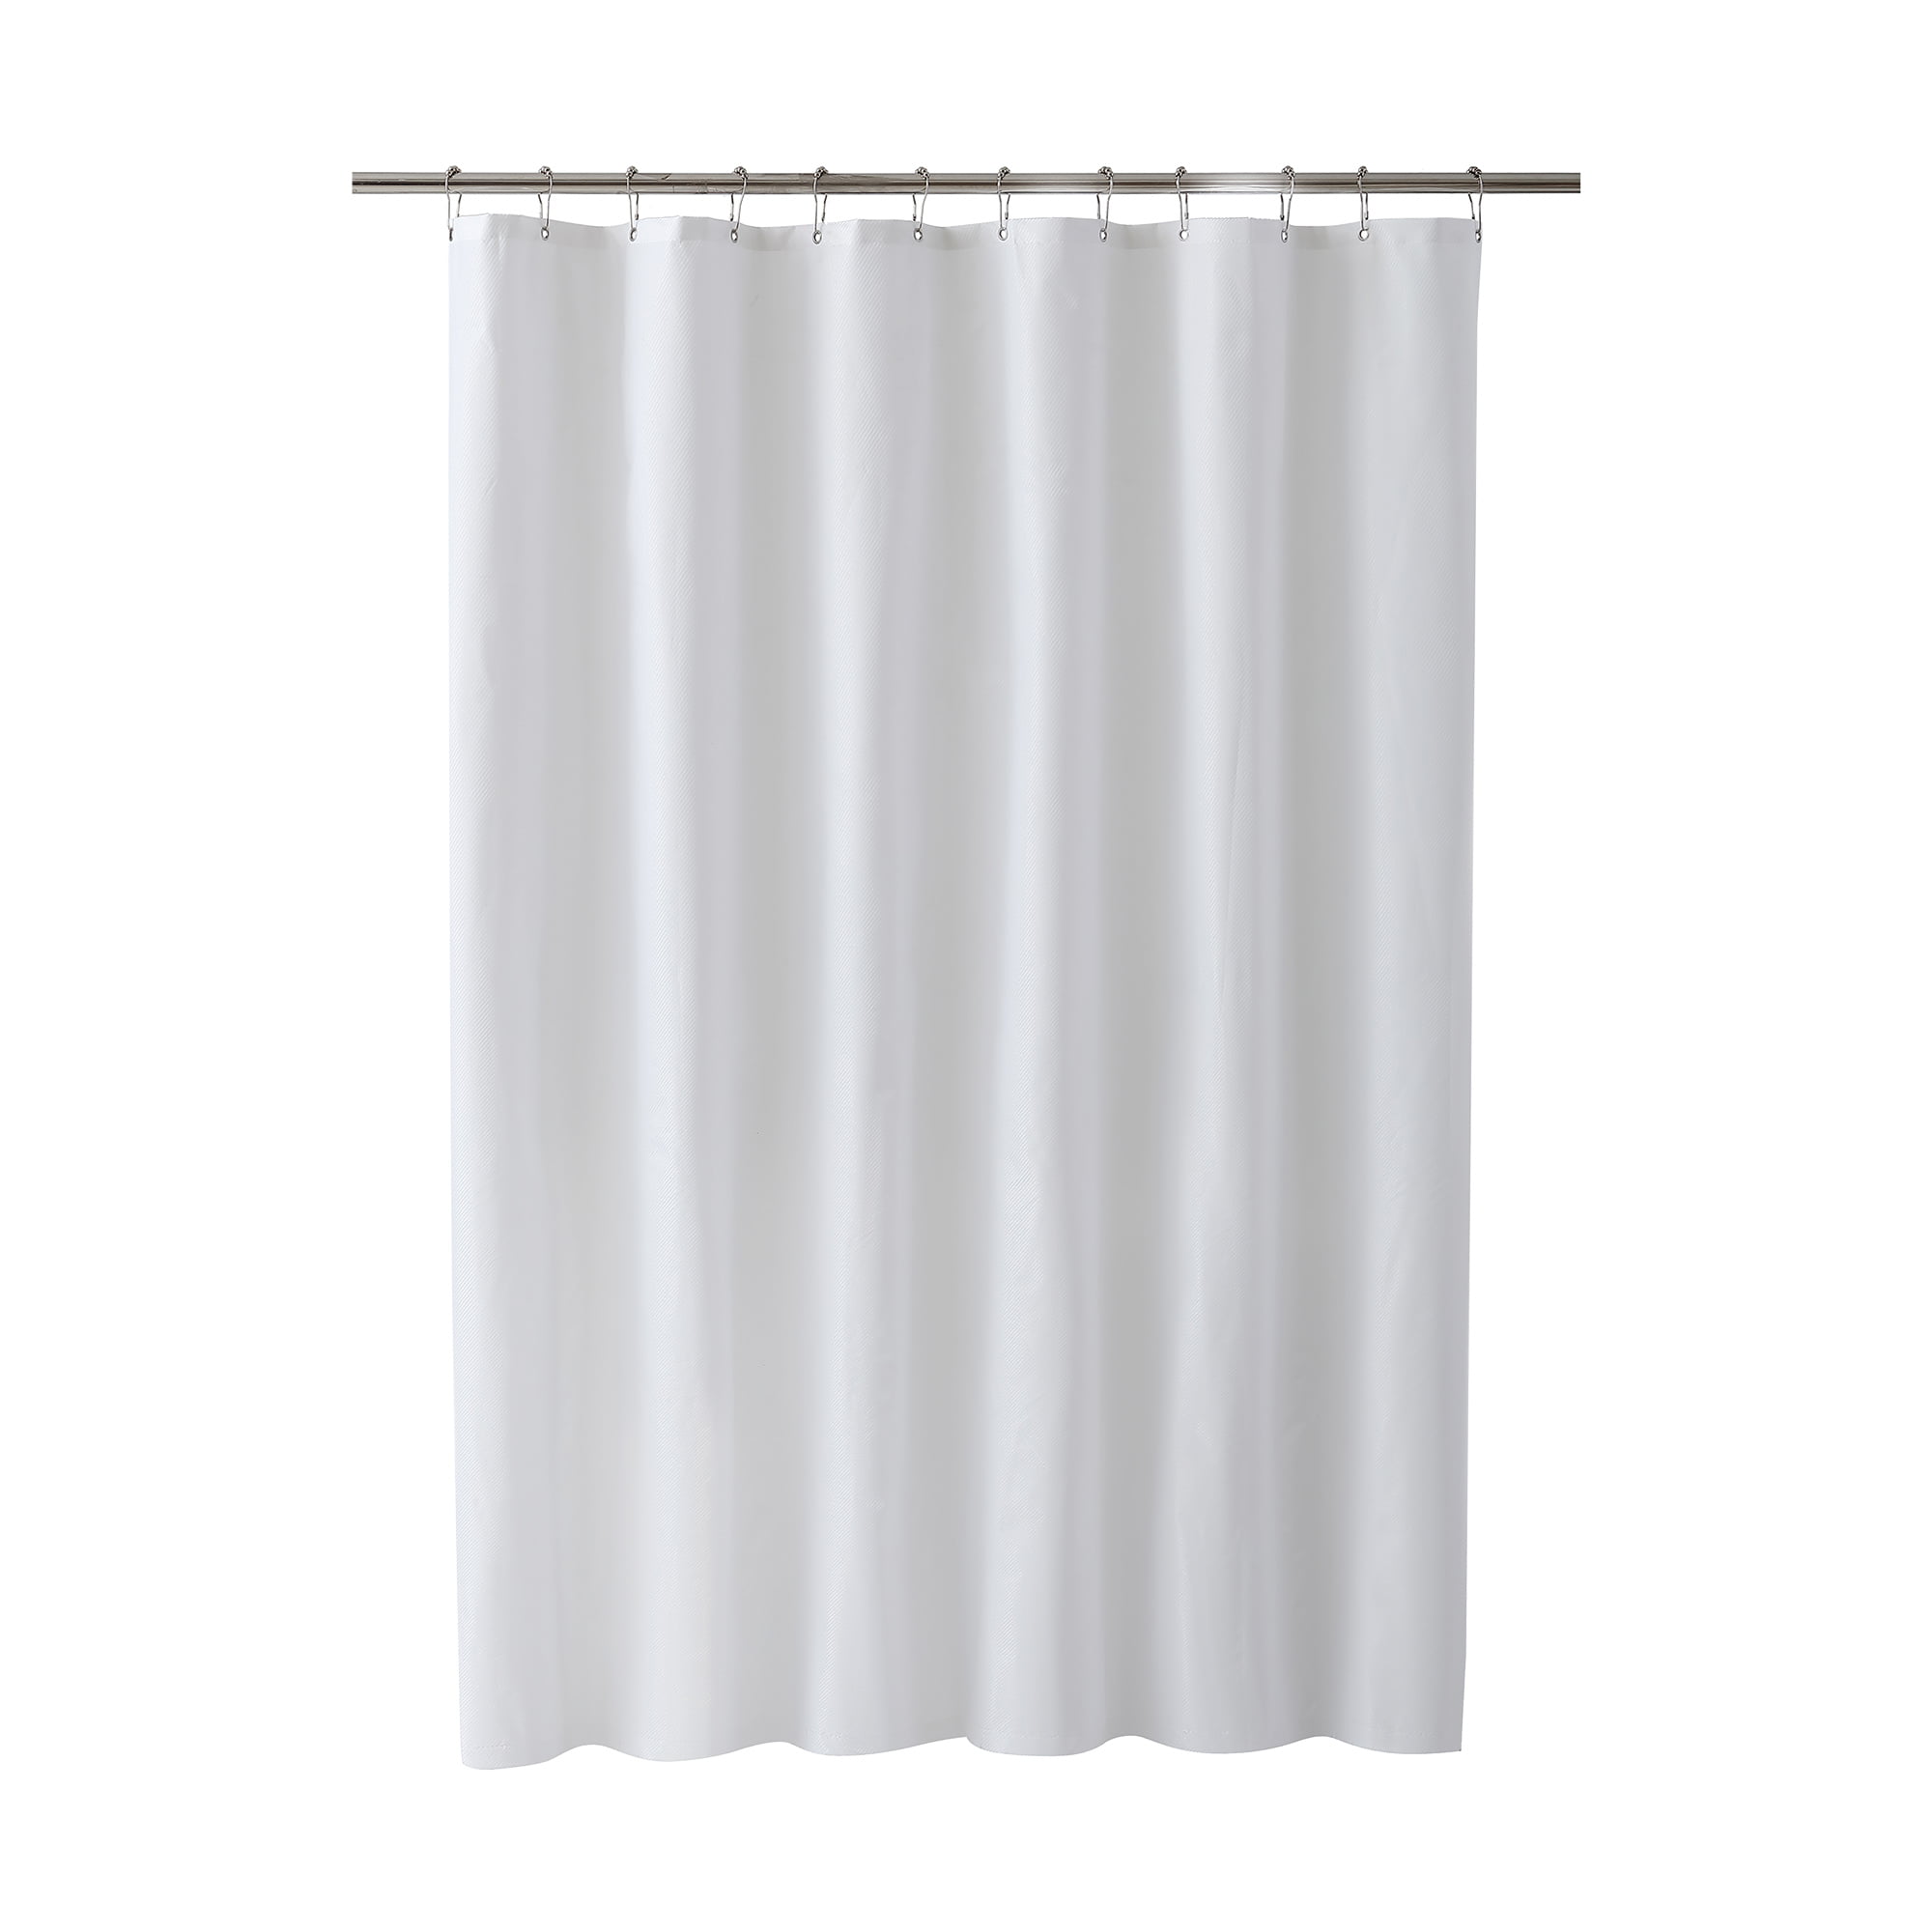 Clorox Waterproof Fabric Shower Curtain, White - Walmart.com